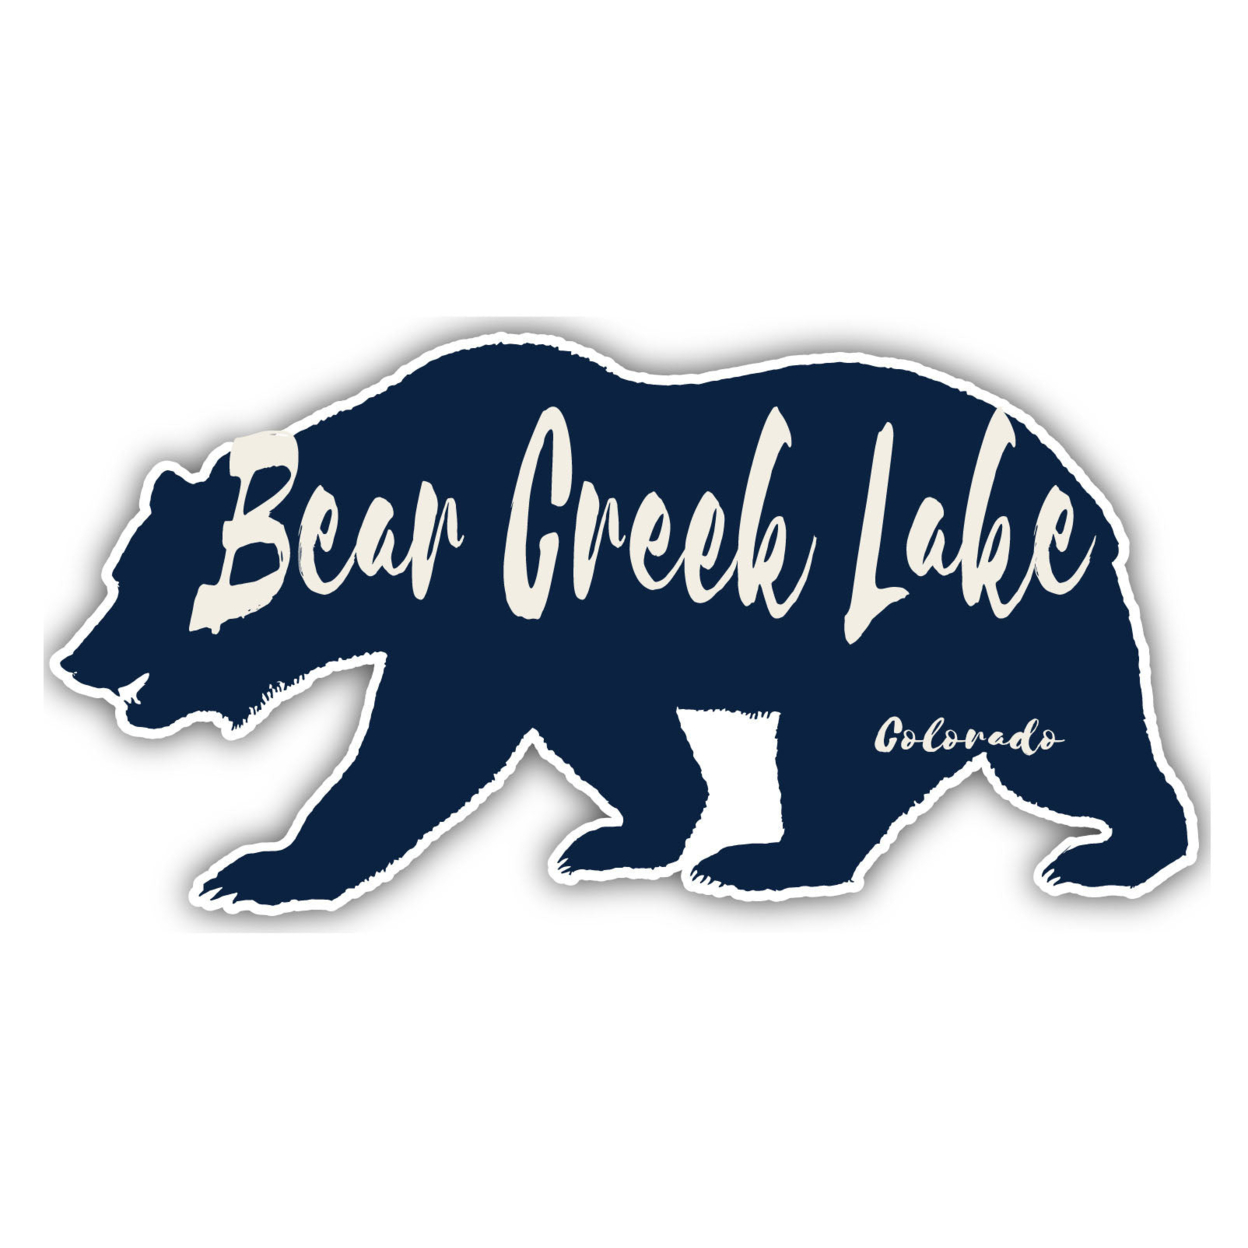 Bear Creek Lake Colorado Souvenir Decorative Stickers (Choose Theme And Size) - Single Unit, 12-Inch, Bear